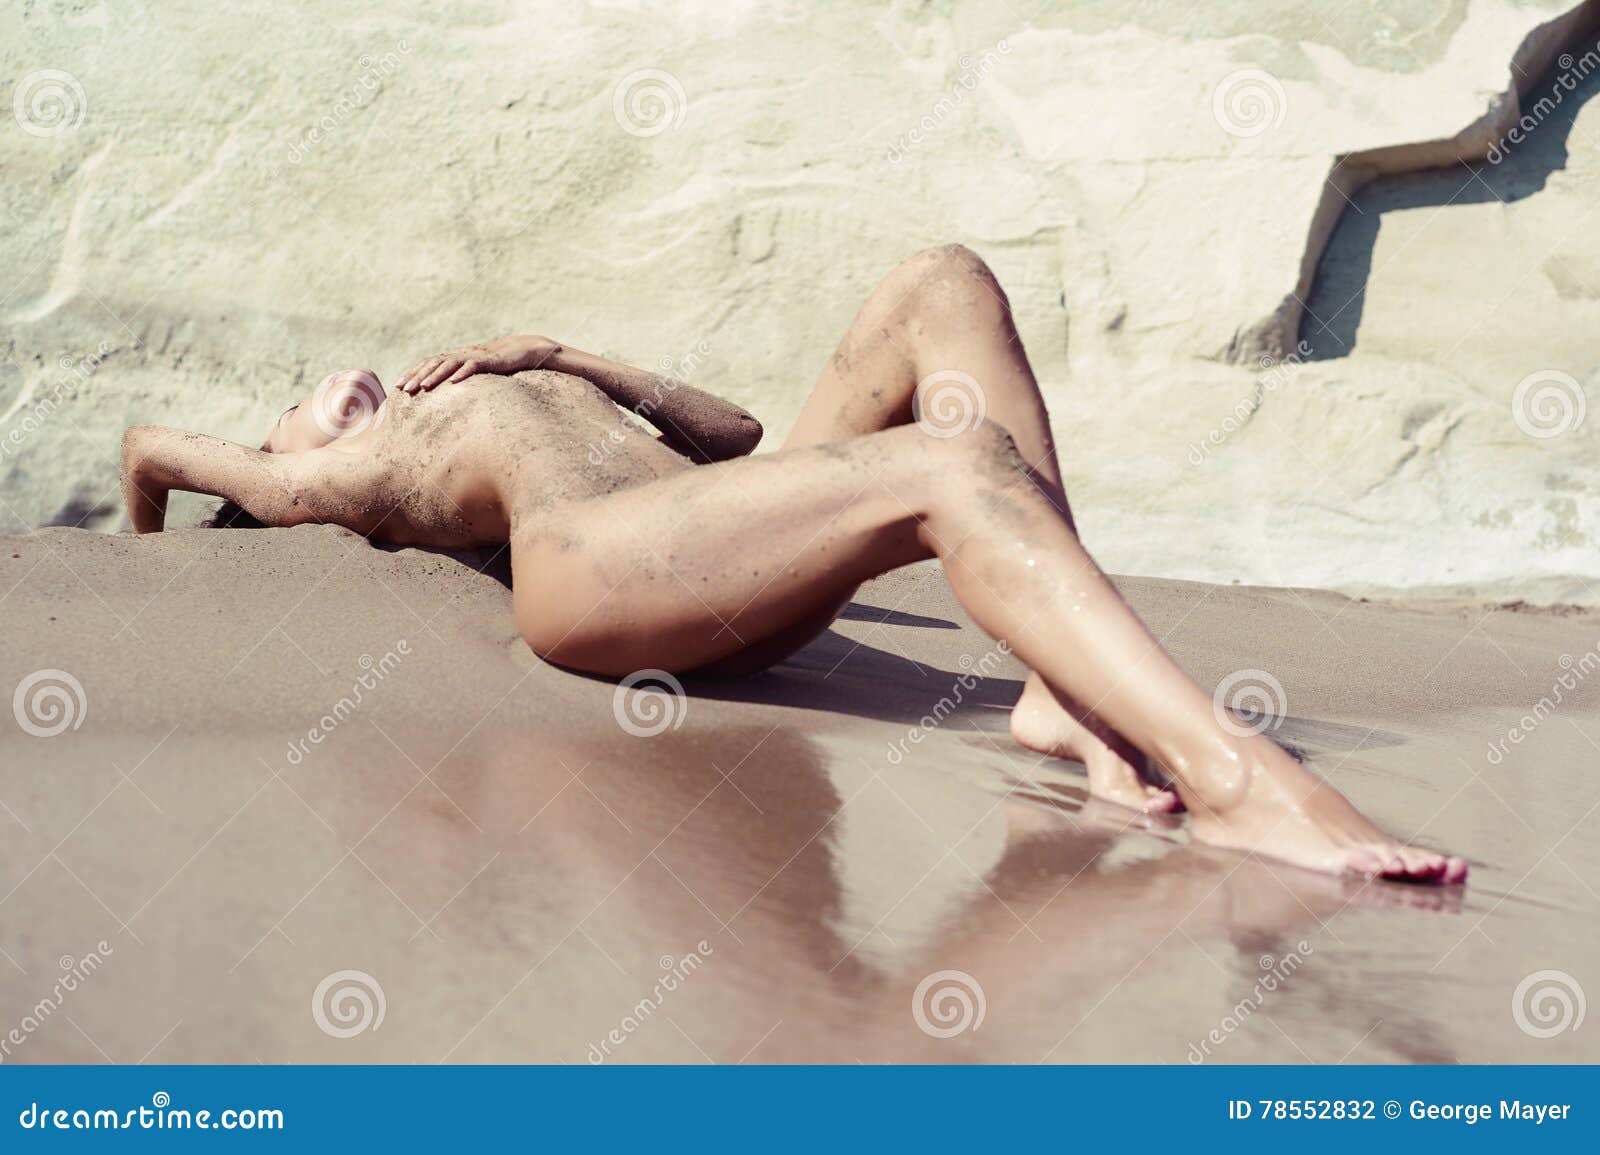 Beaches nude women on